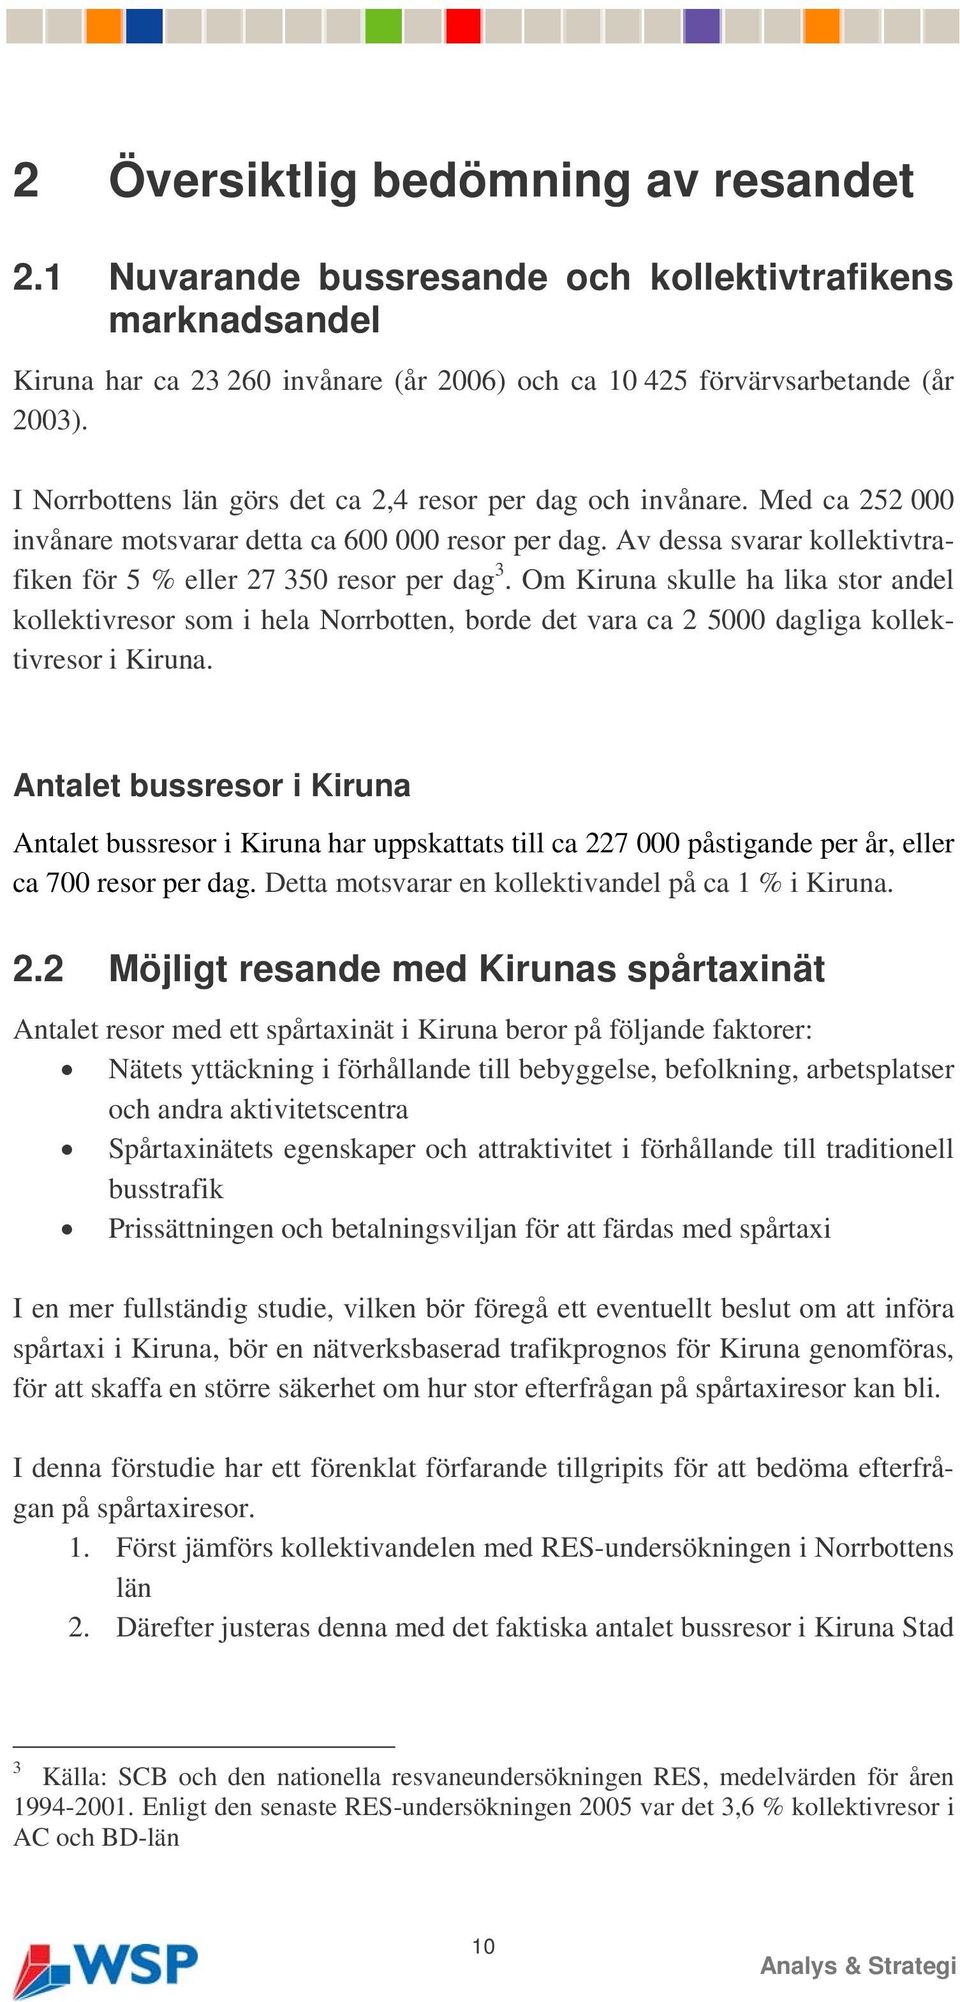 Om Kiruna skulle ha lika stor andel kollektivresor som i hela Norrbotten, borde det vara ca 2 5000 dagliga kollektivresor i Kiruna.